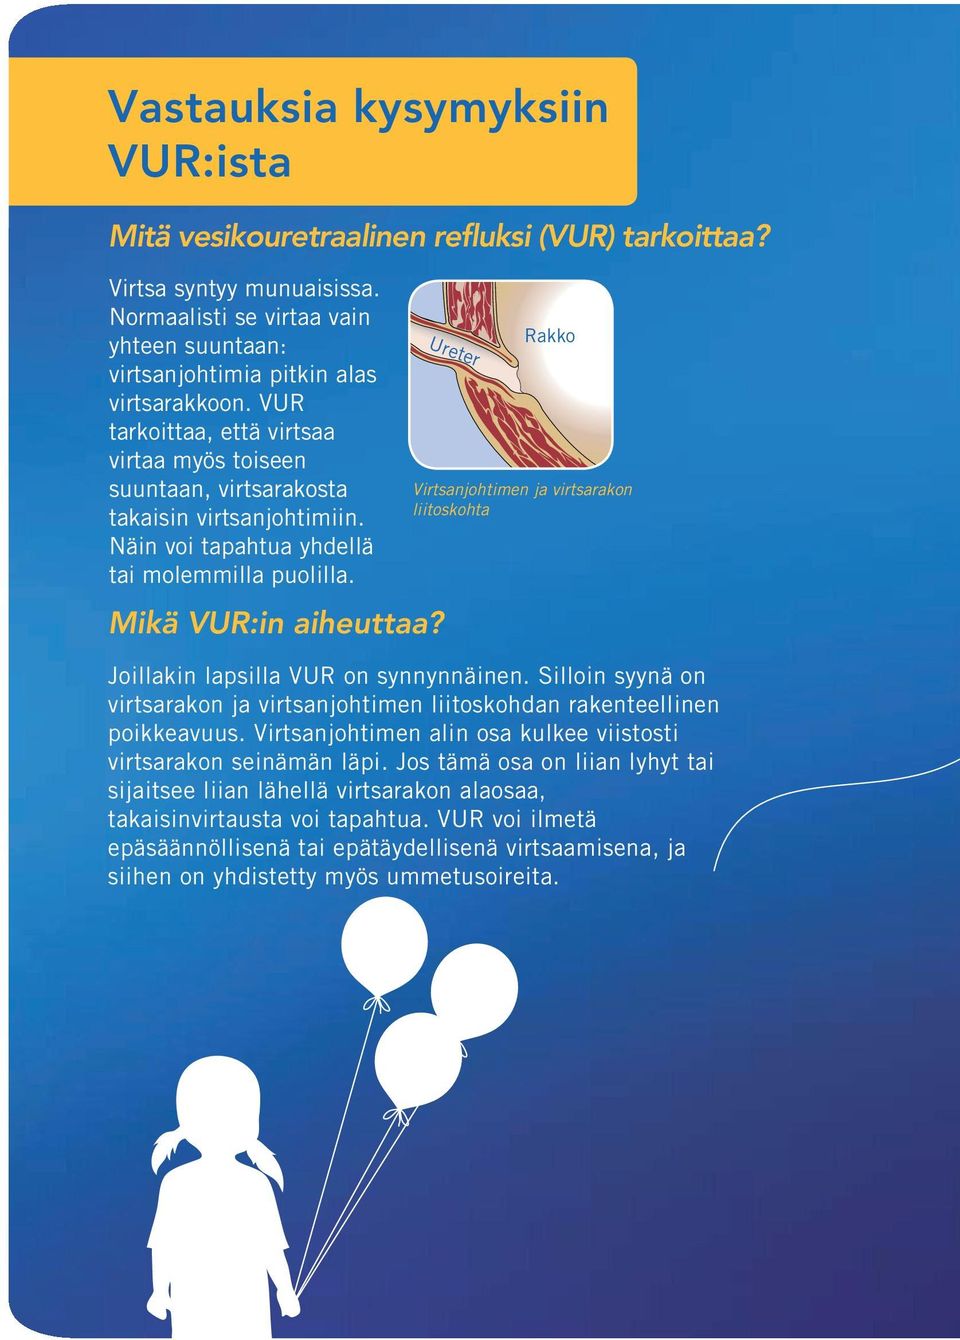 Ureter Rakko Virtsanjohtimen ja virtsarakon liitoskohta Joillakin lapsilla VUR on synnynnäinen. Silloin syynä on virtsarakon ja virtsanjohtimen liitoskohdan rakenteellinen poikkeavuus.